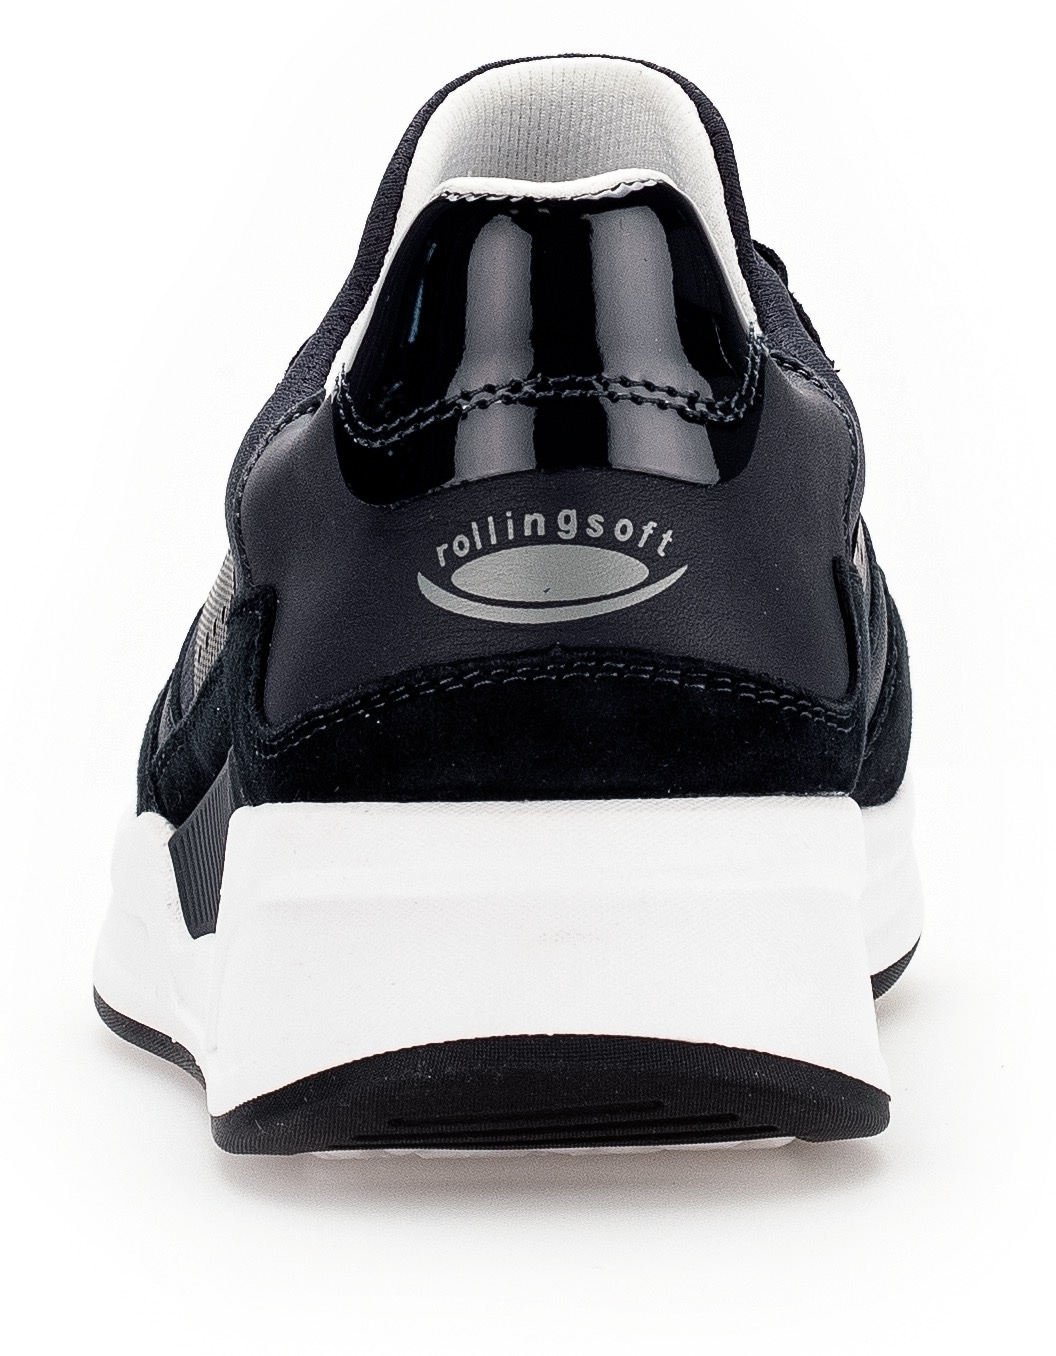 Gabor Rollingsoft Slip-On Sneaker, Komfortschuh, Slipper, Freizeitschuh mit Besätzen in Metallic-Optik